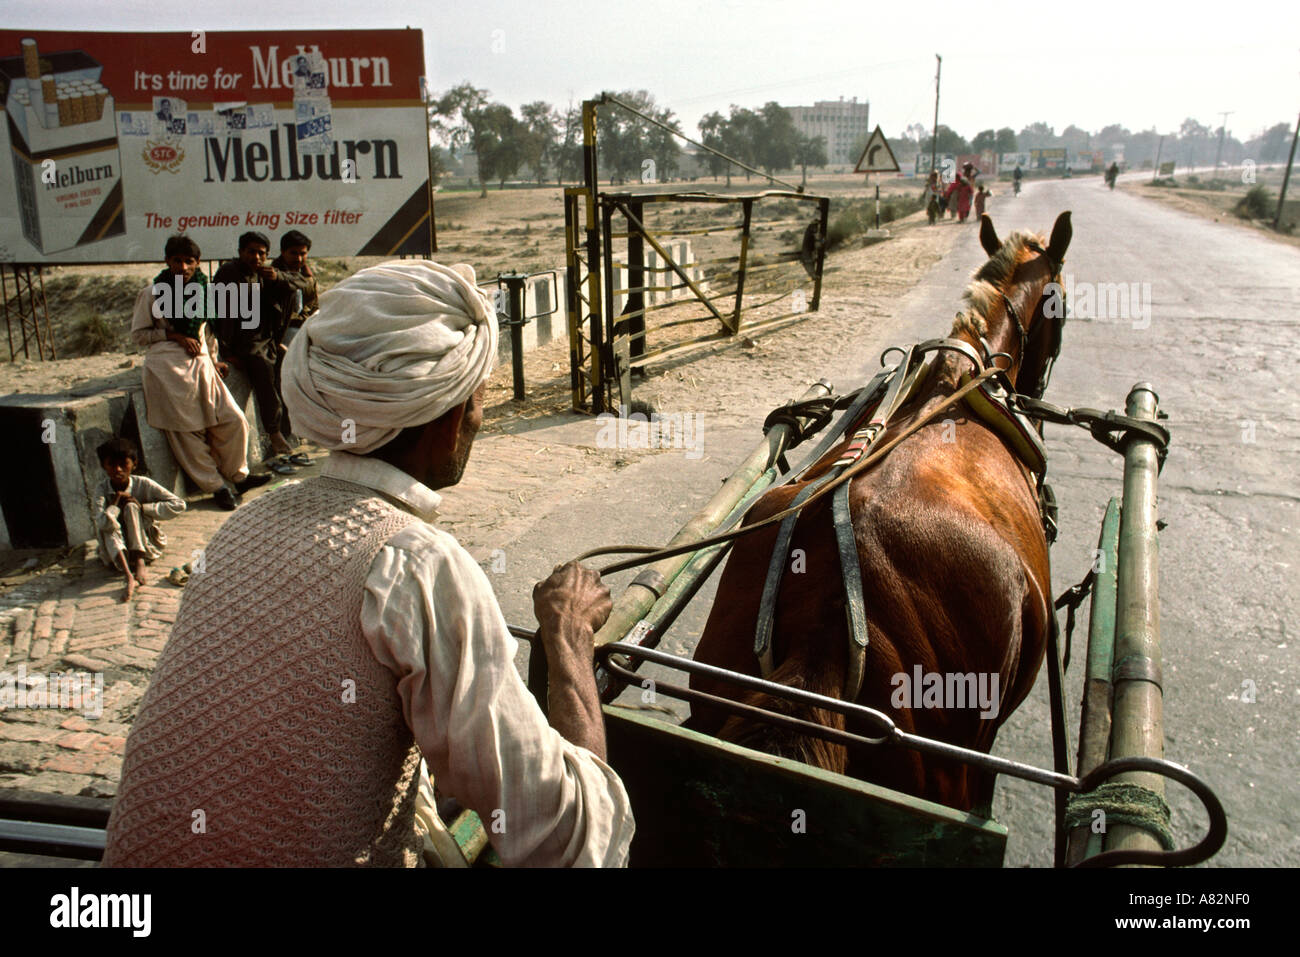 Du Sud Pakistan Punjab Bahawalpur horse panier cigarette Marlboro passage pilote exemplaire Melburn publicité passagers afficher Banque D'Images